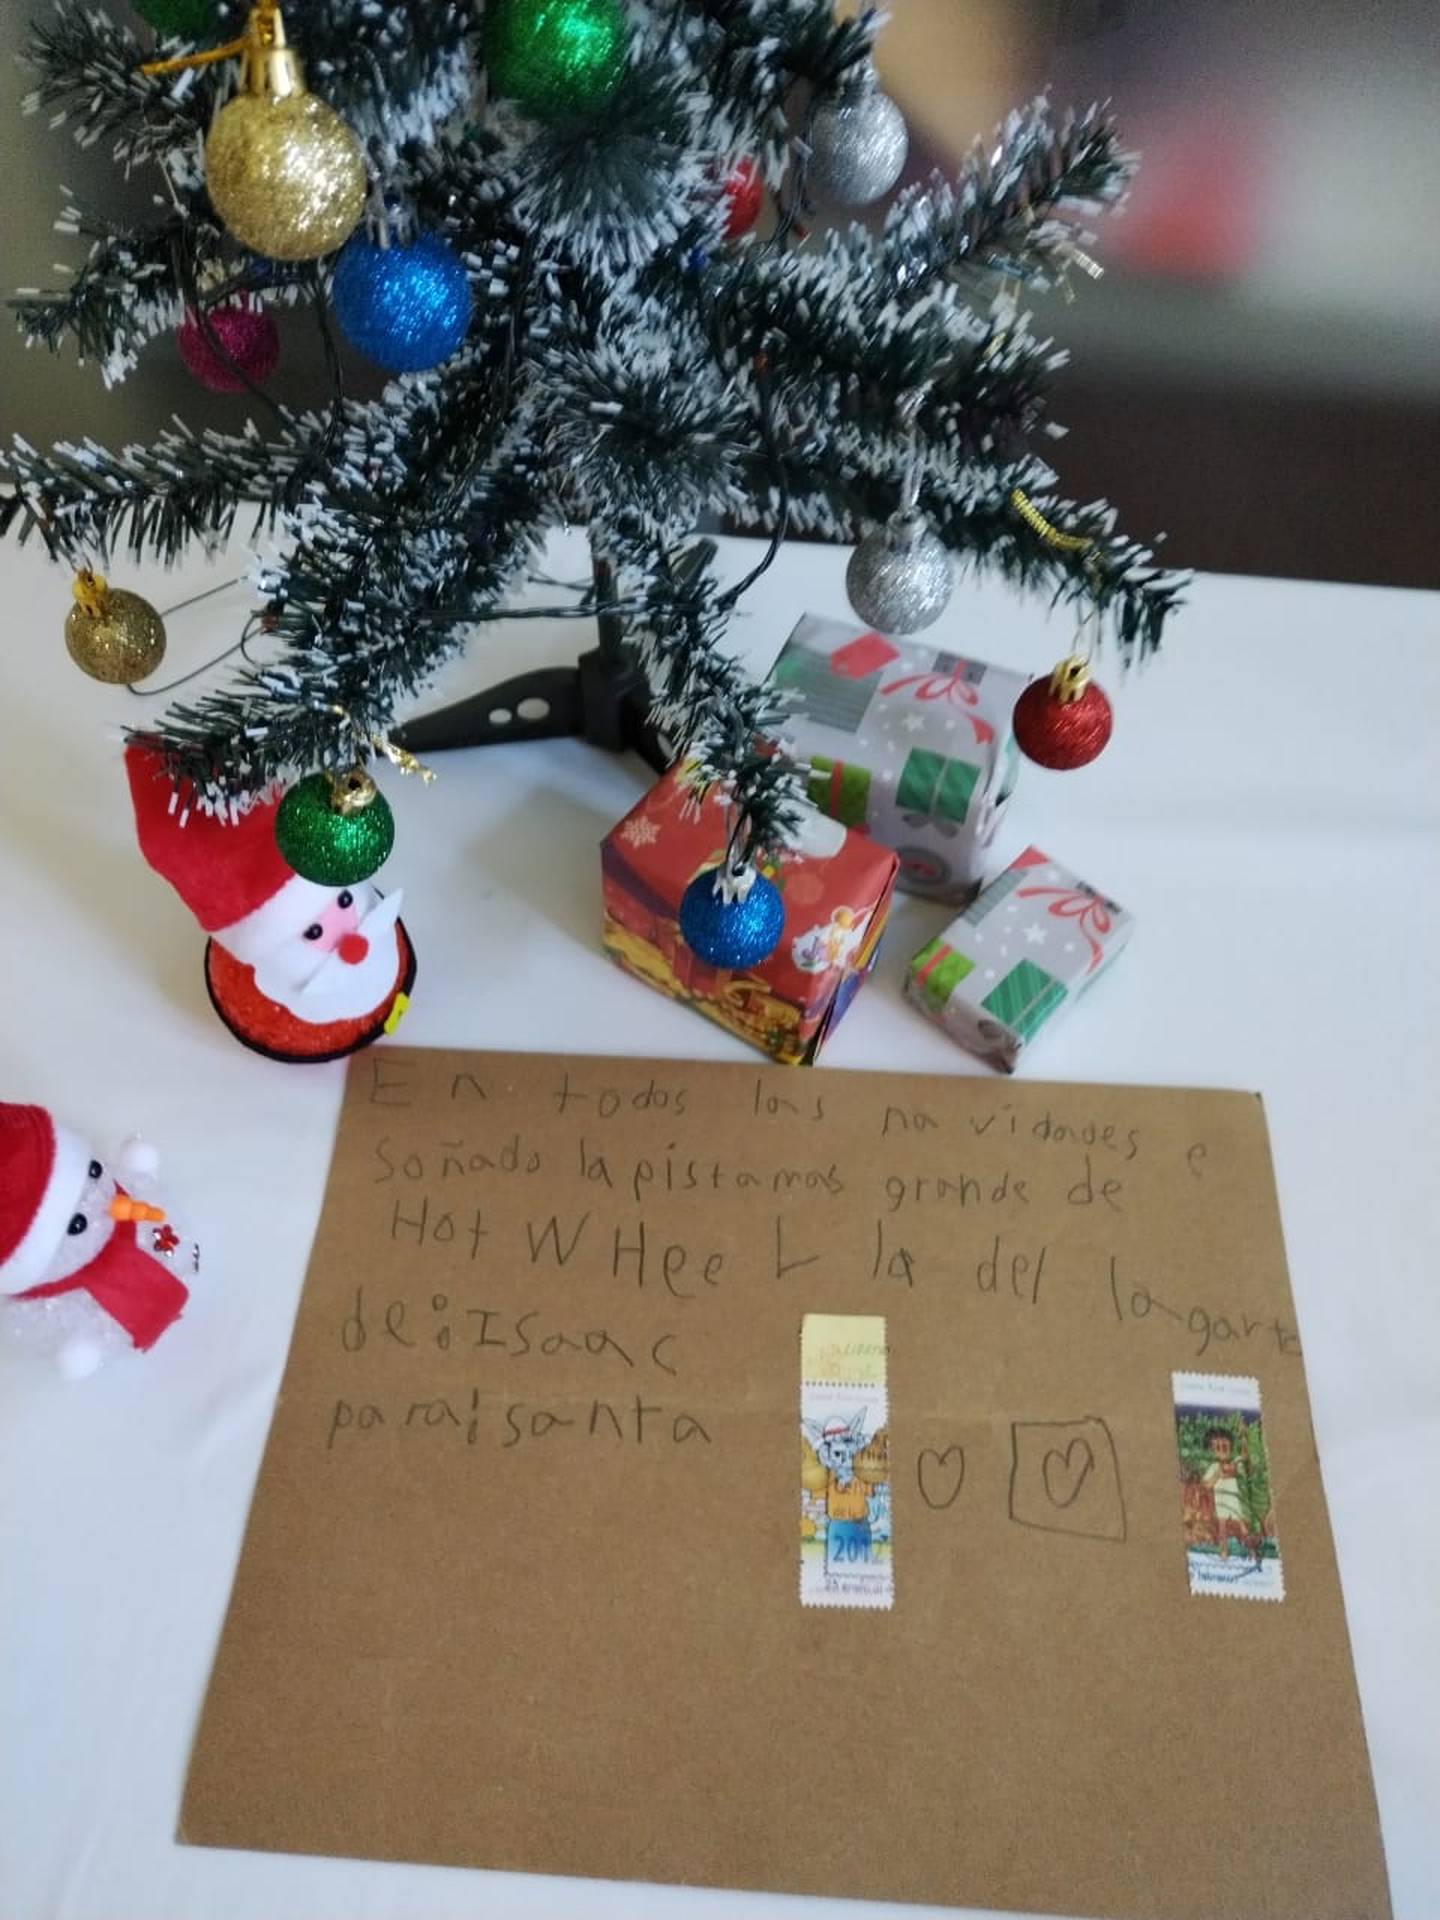 Desde noviembre del 2022 a Correos de Costa Rica comenzaron a llegar cartitas al Niñito Jesús y a Santa de parte de niños que piden sus regalos